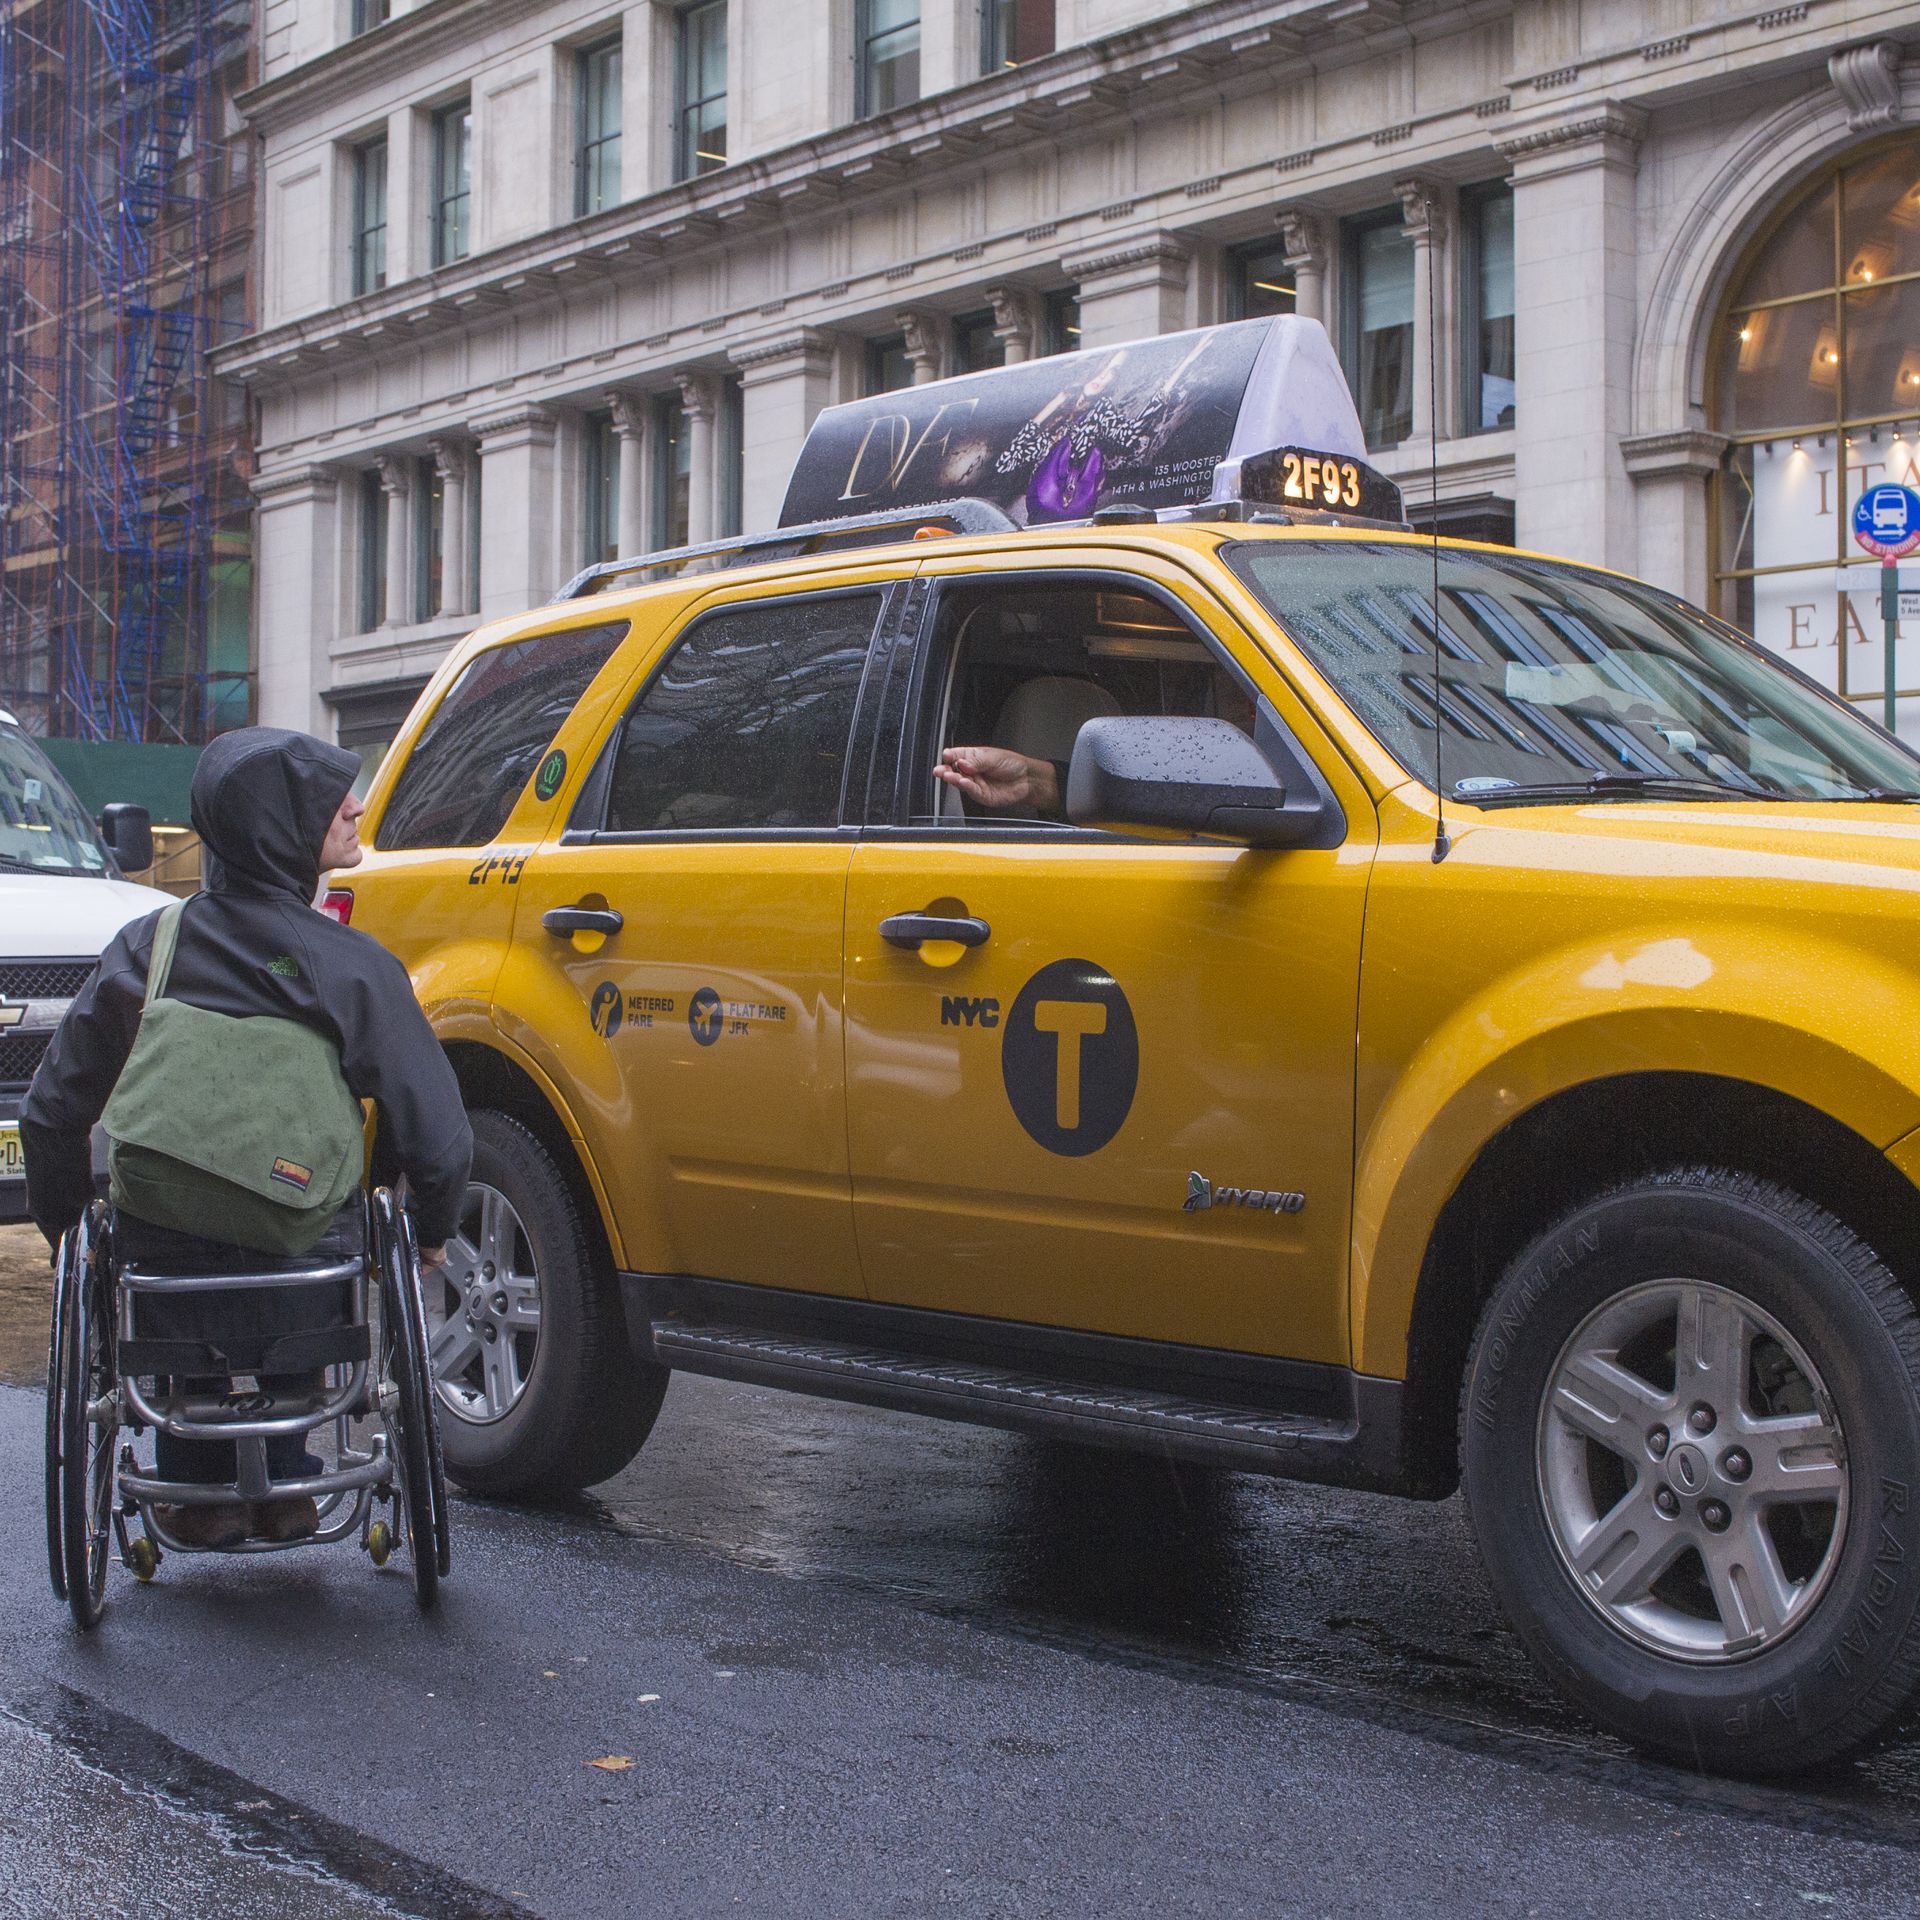 A man in a wheelchair hails a taxi